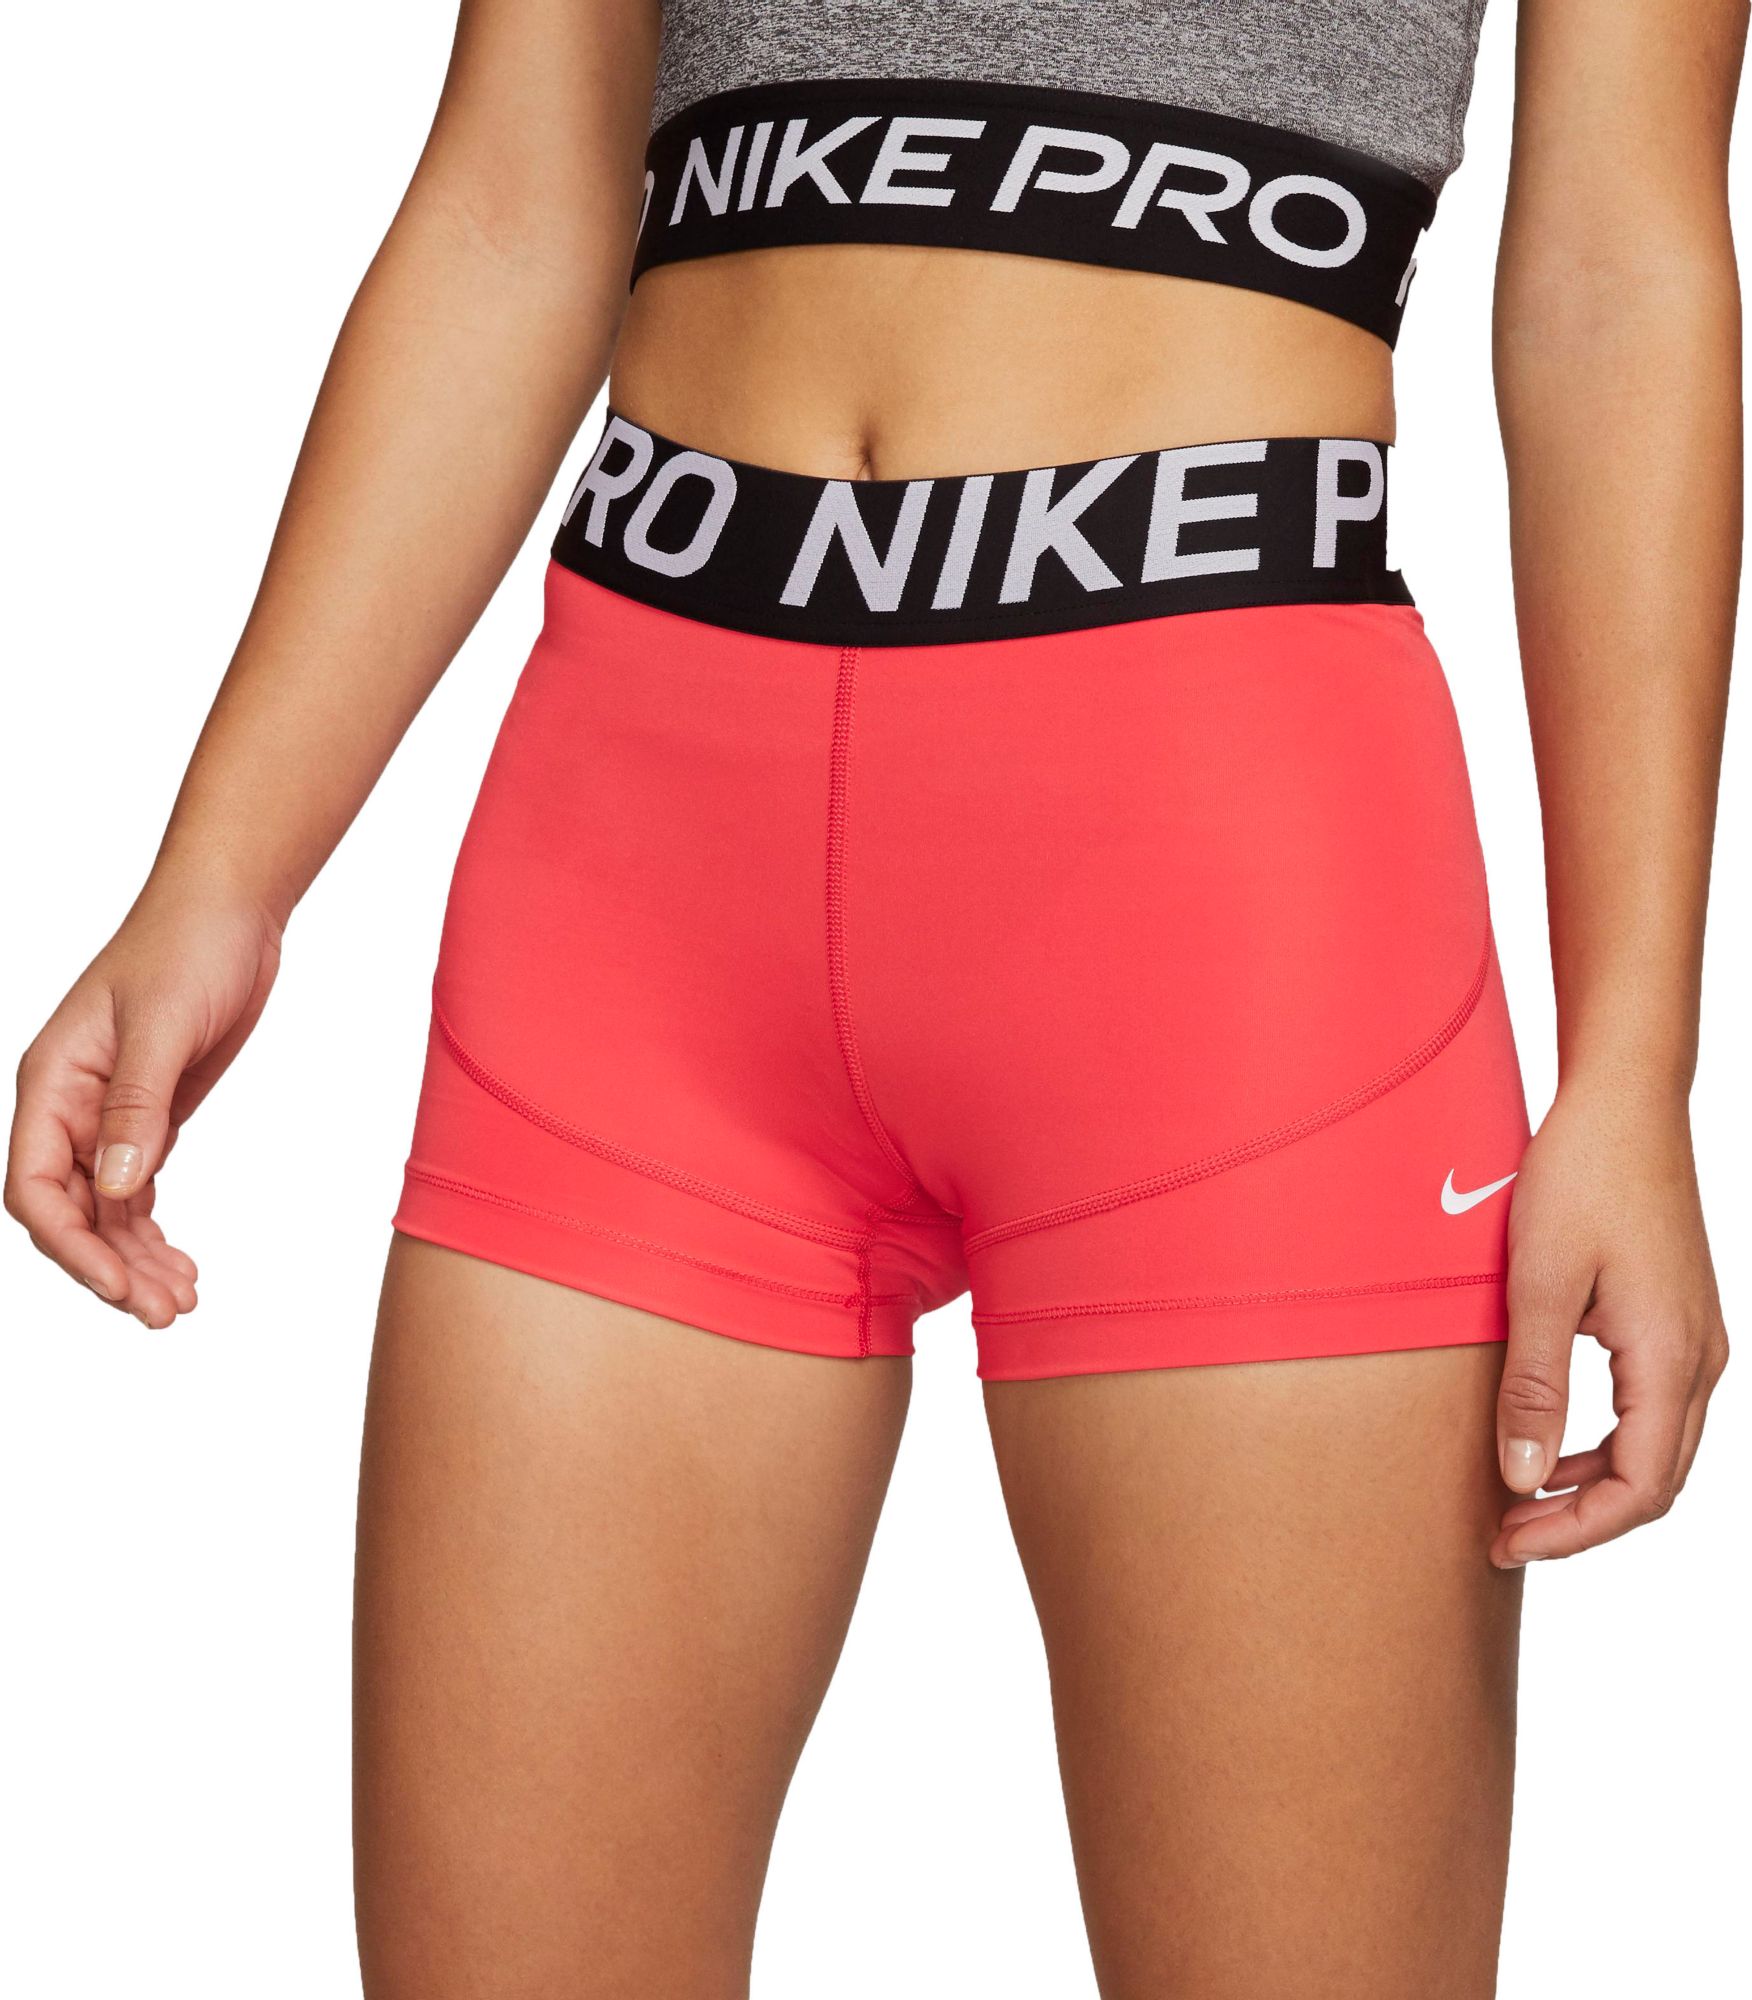 nike pro shorts sexy